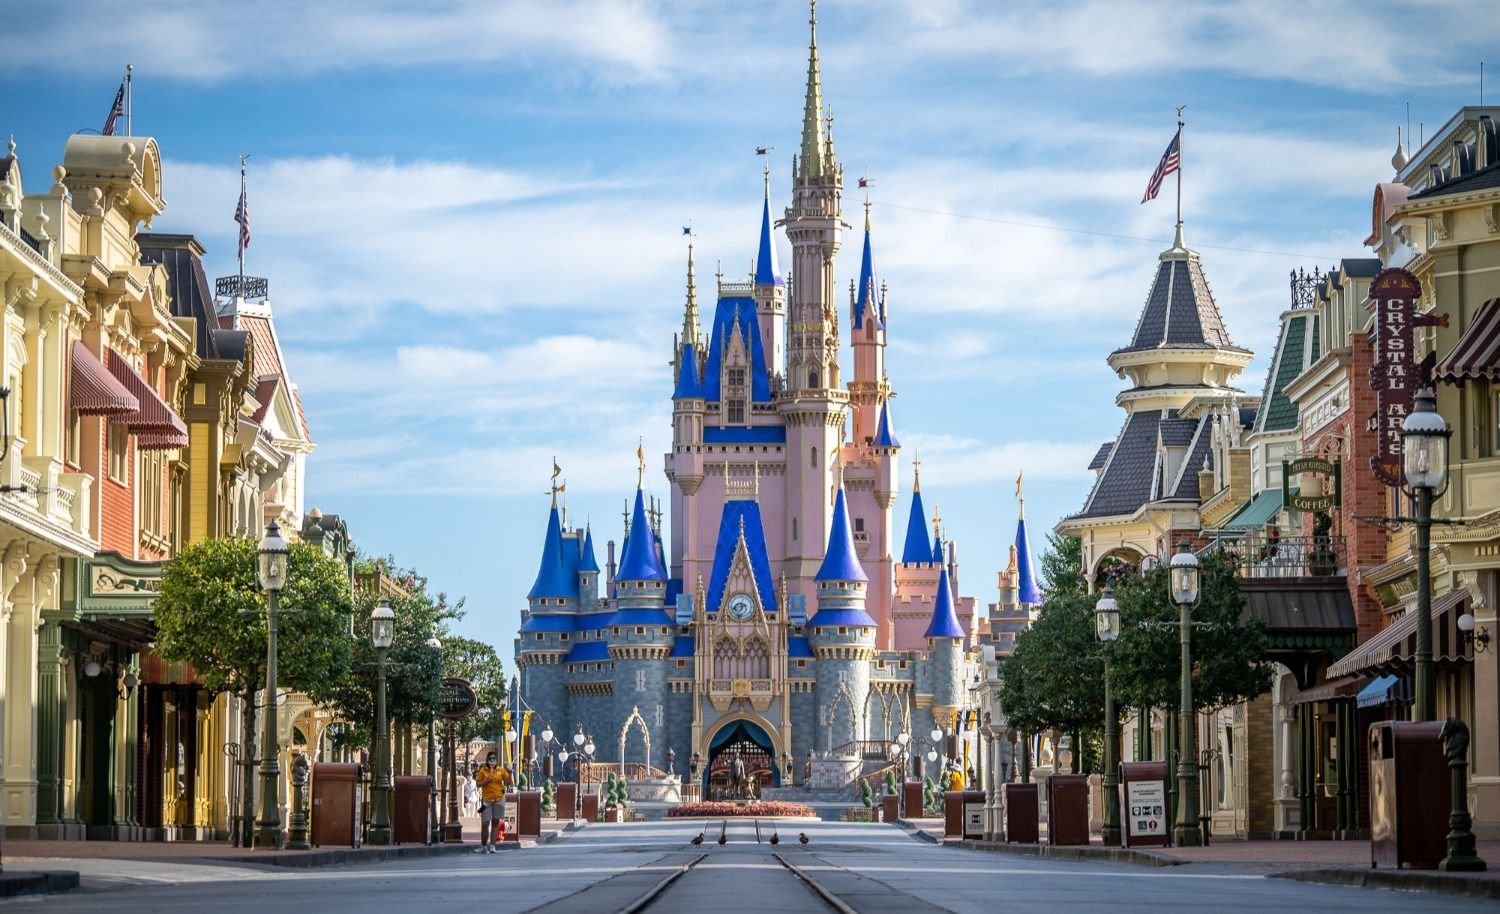 Disney World cumple 50 años y estrenará nuevos espectáculos llenos de magia